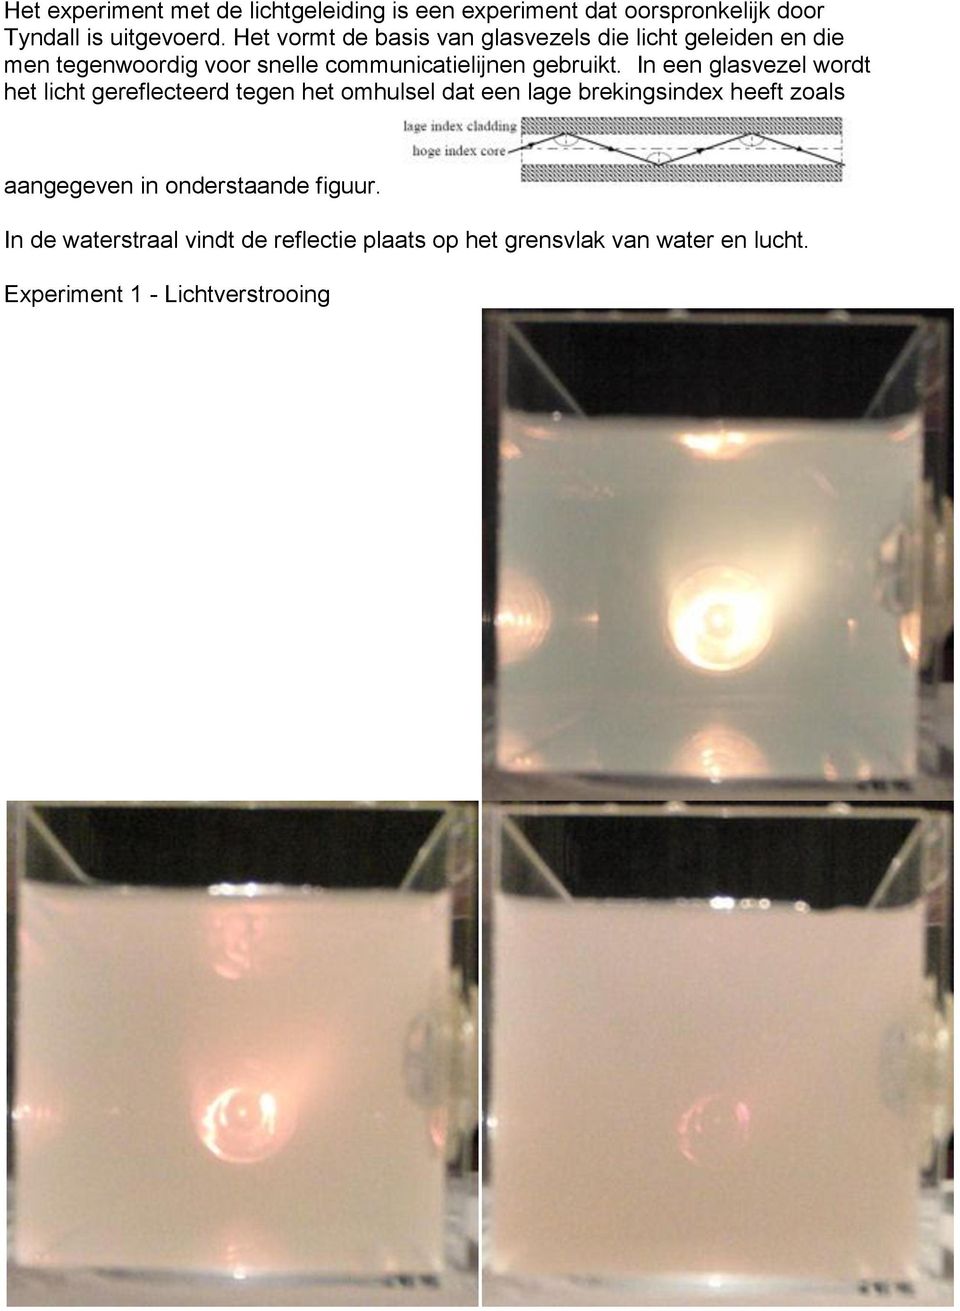 In een glasvezel wordt het licht gereflecteerd tegen het omhulsel dat een lage brekingsindex heeft zoals aangegeven